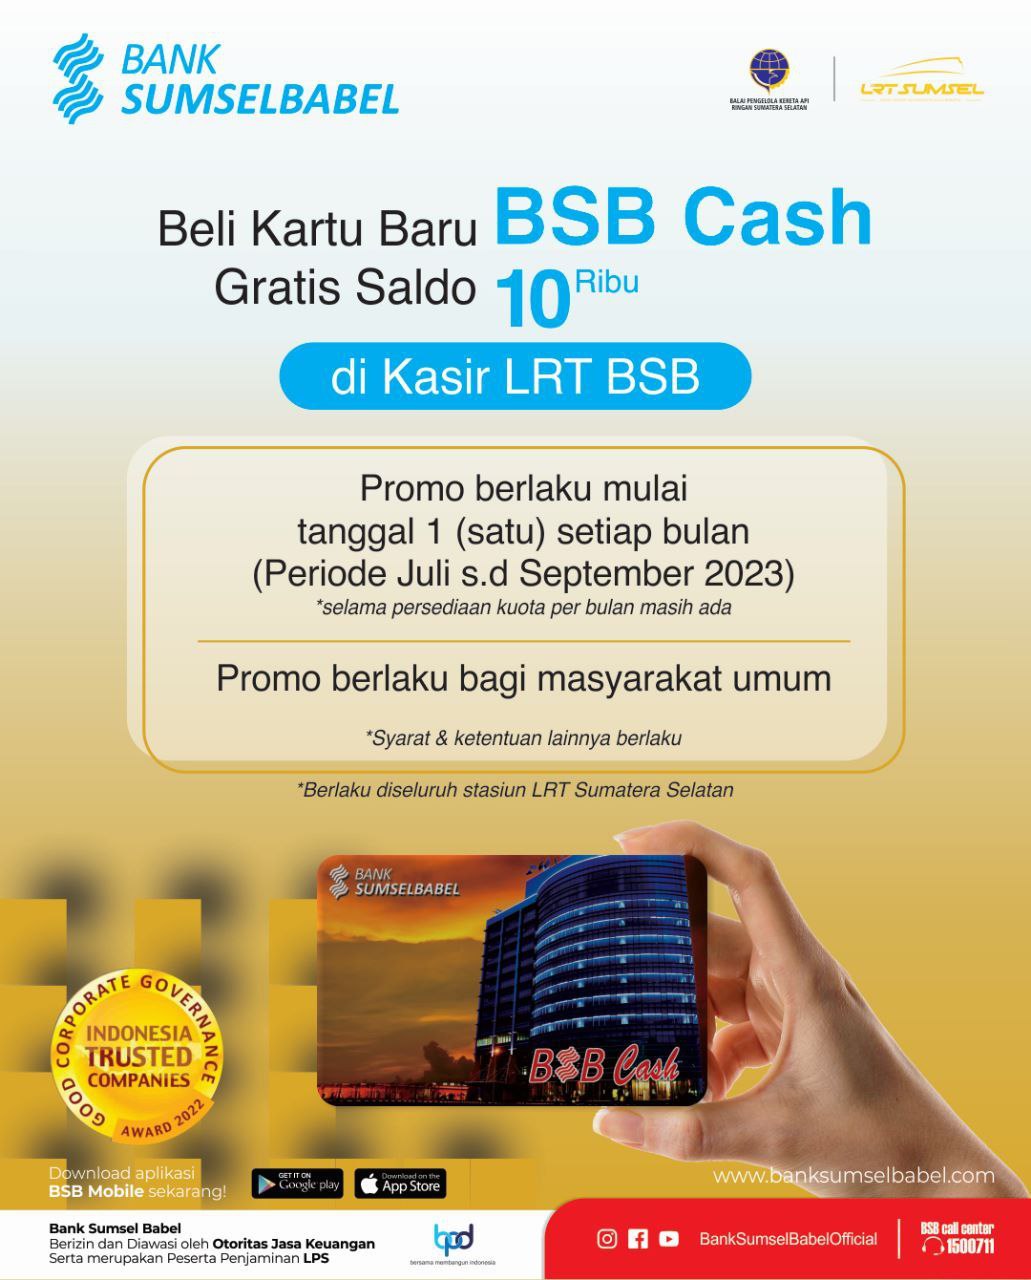 Beli Kartu Baru BSB Cash Gratis Saldo 10 ribu